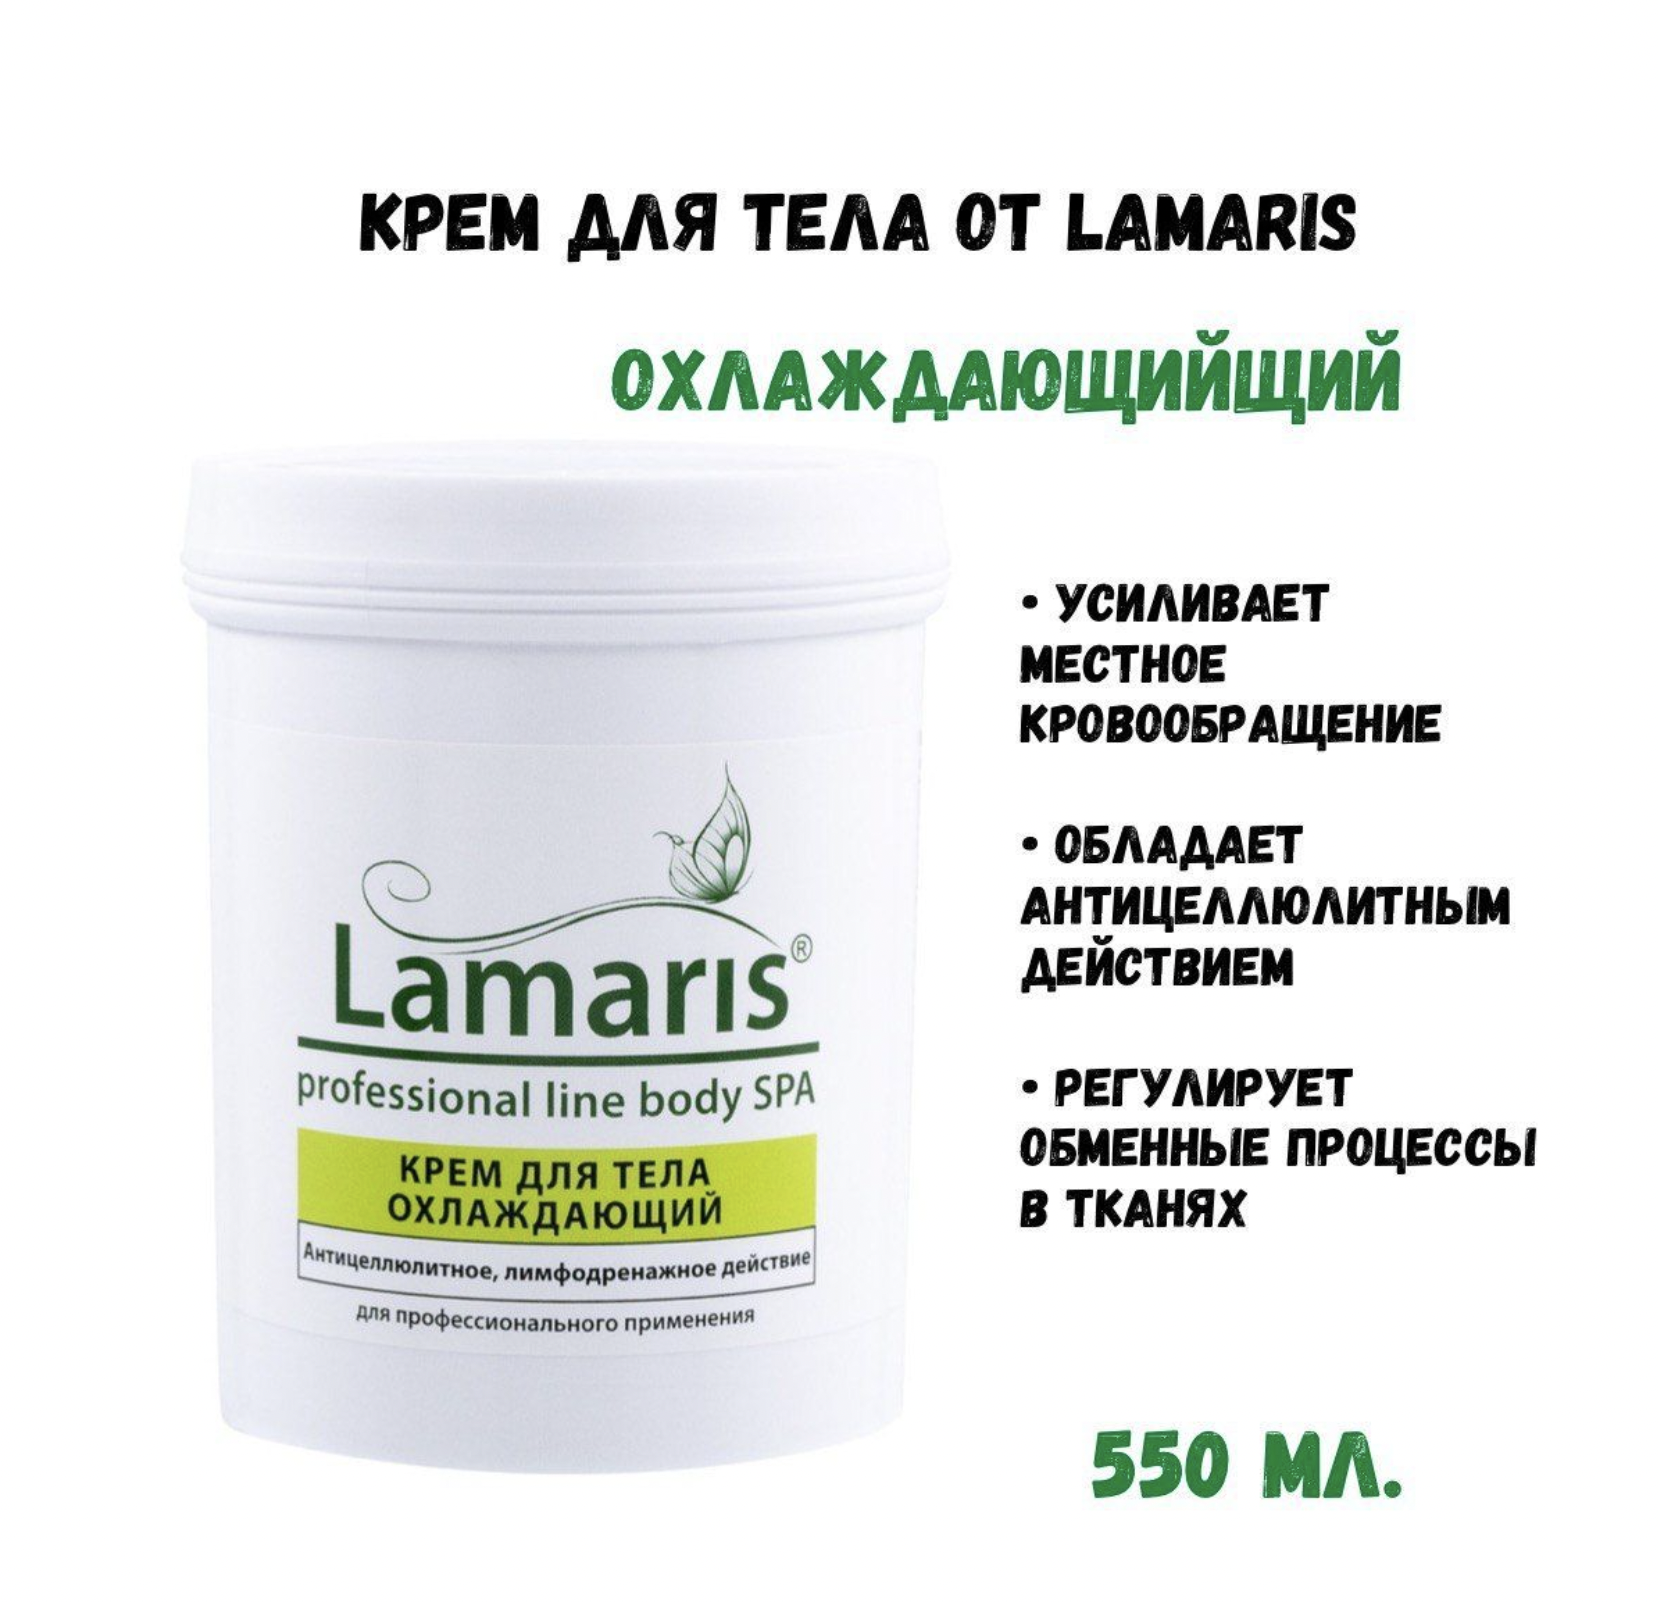 Крем для тела Lamaris охлаждающий 550 мл паста для антицеллюлитного обертывания sea coffee coffeetree 160 г